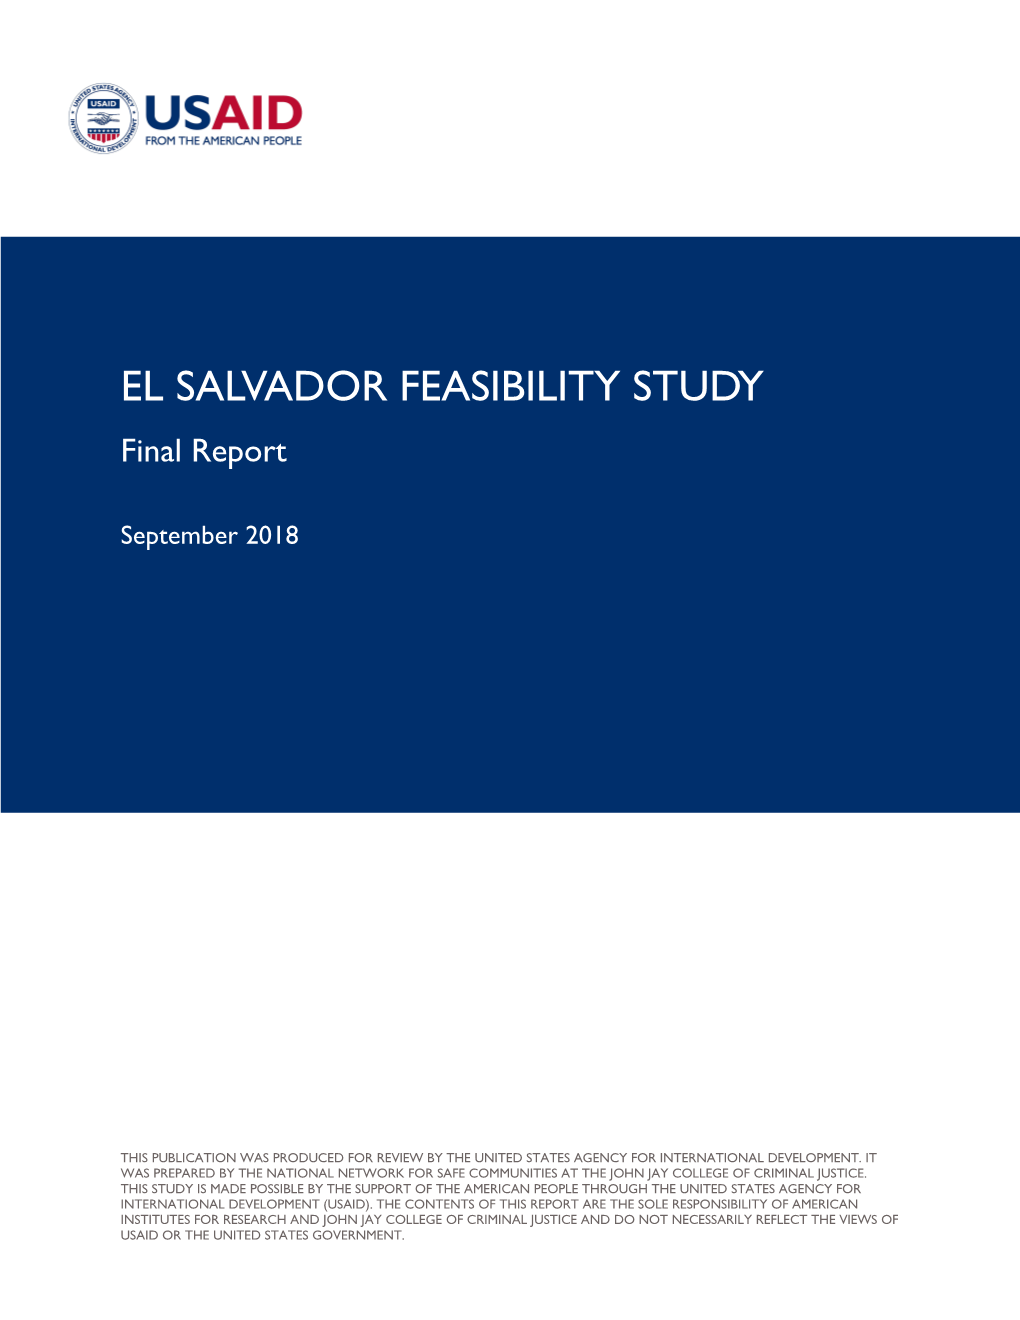 El Salvador Feasibility Study, Final Report